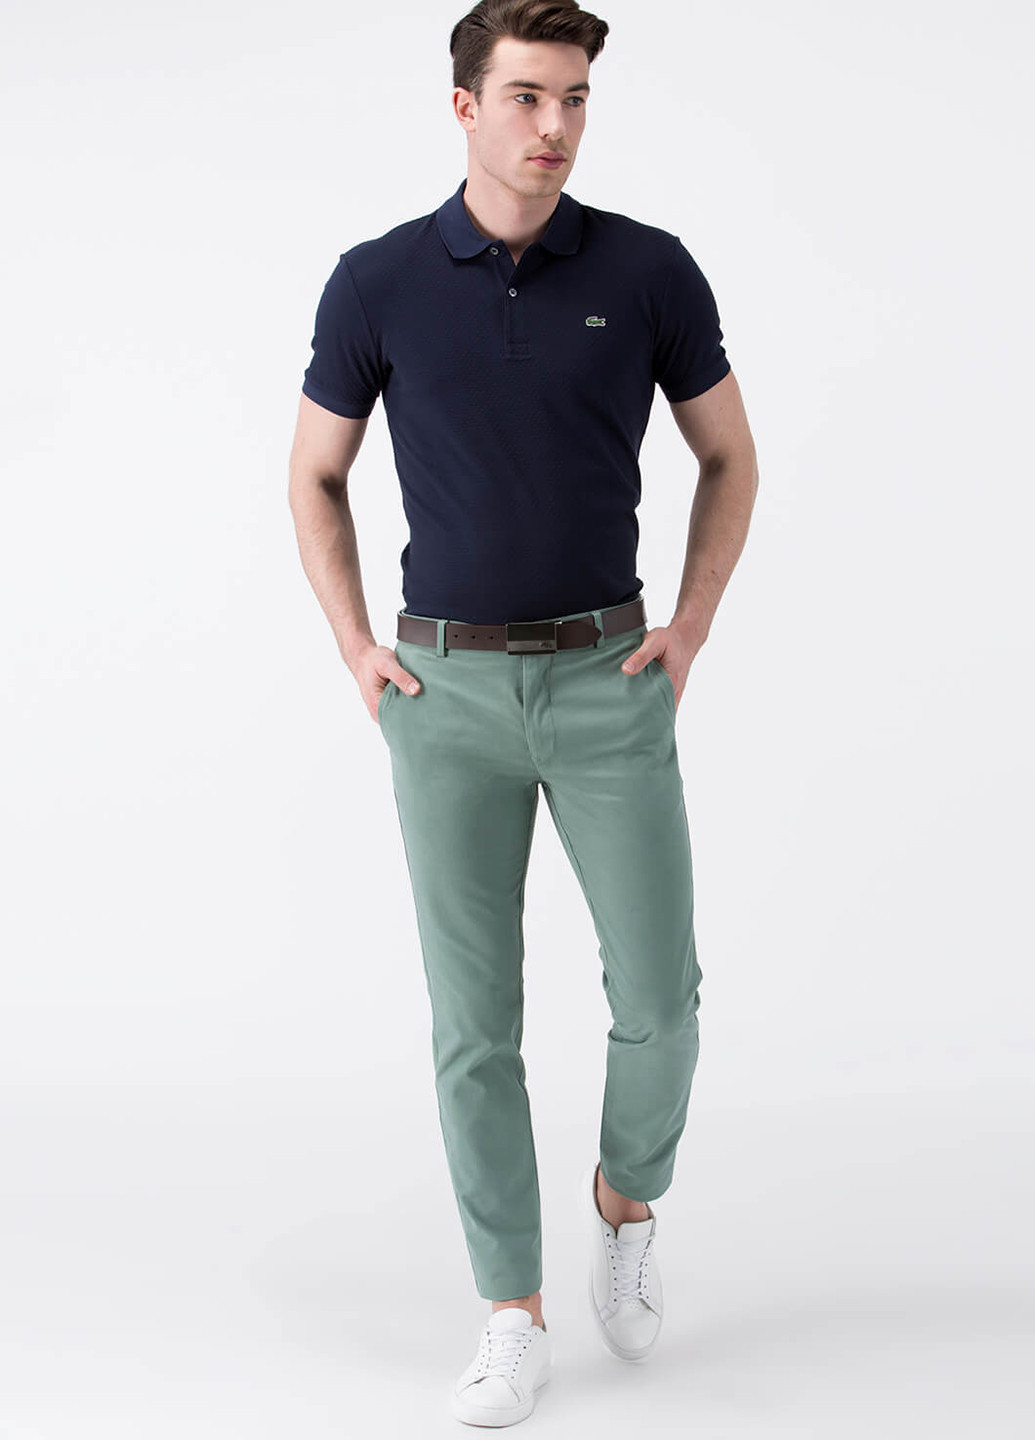 Светло-зеленые кэжуал демисезонные чиносы брюки Lacoste